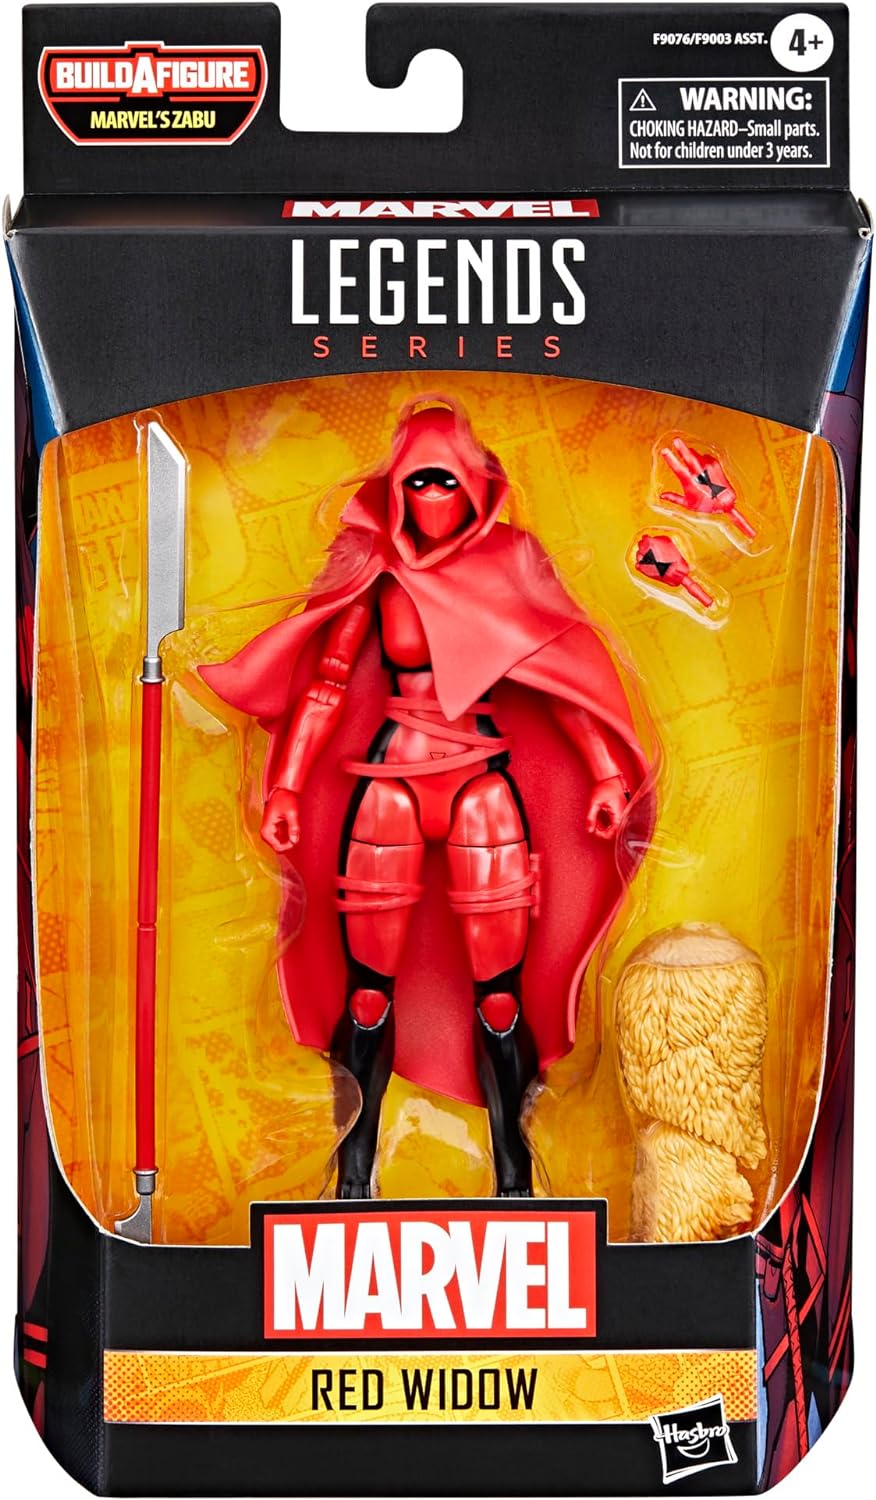 Marvel Legends Red Widow (Marvel's Zabu BAF) Action Figure